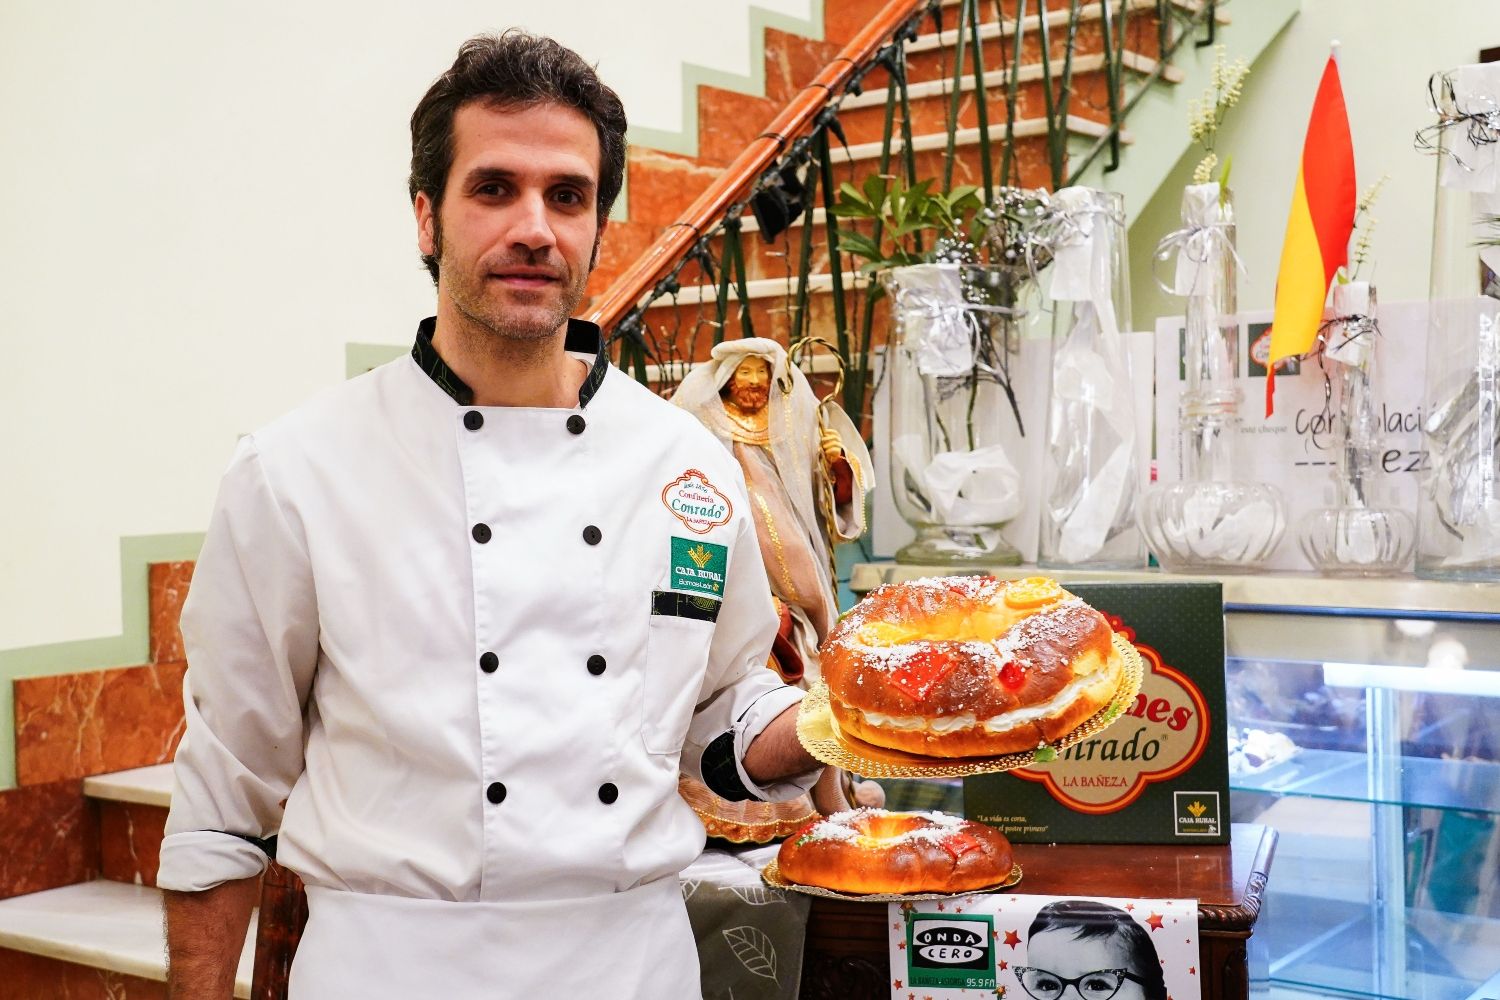  La Confitería Conrado de La Bañeza, sortea 10.000 euros por la compra de su tradicional Roscón de Reyes